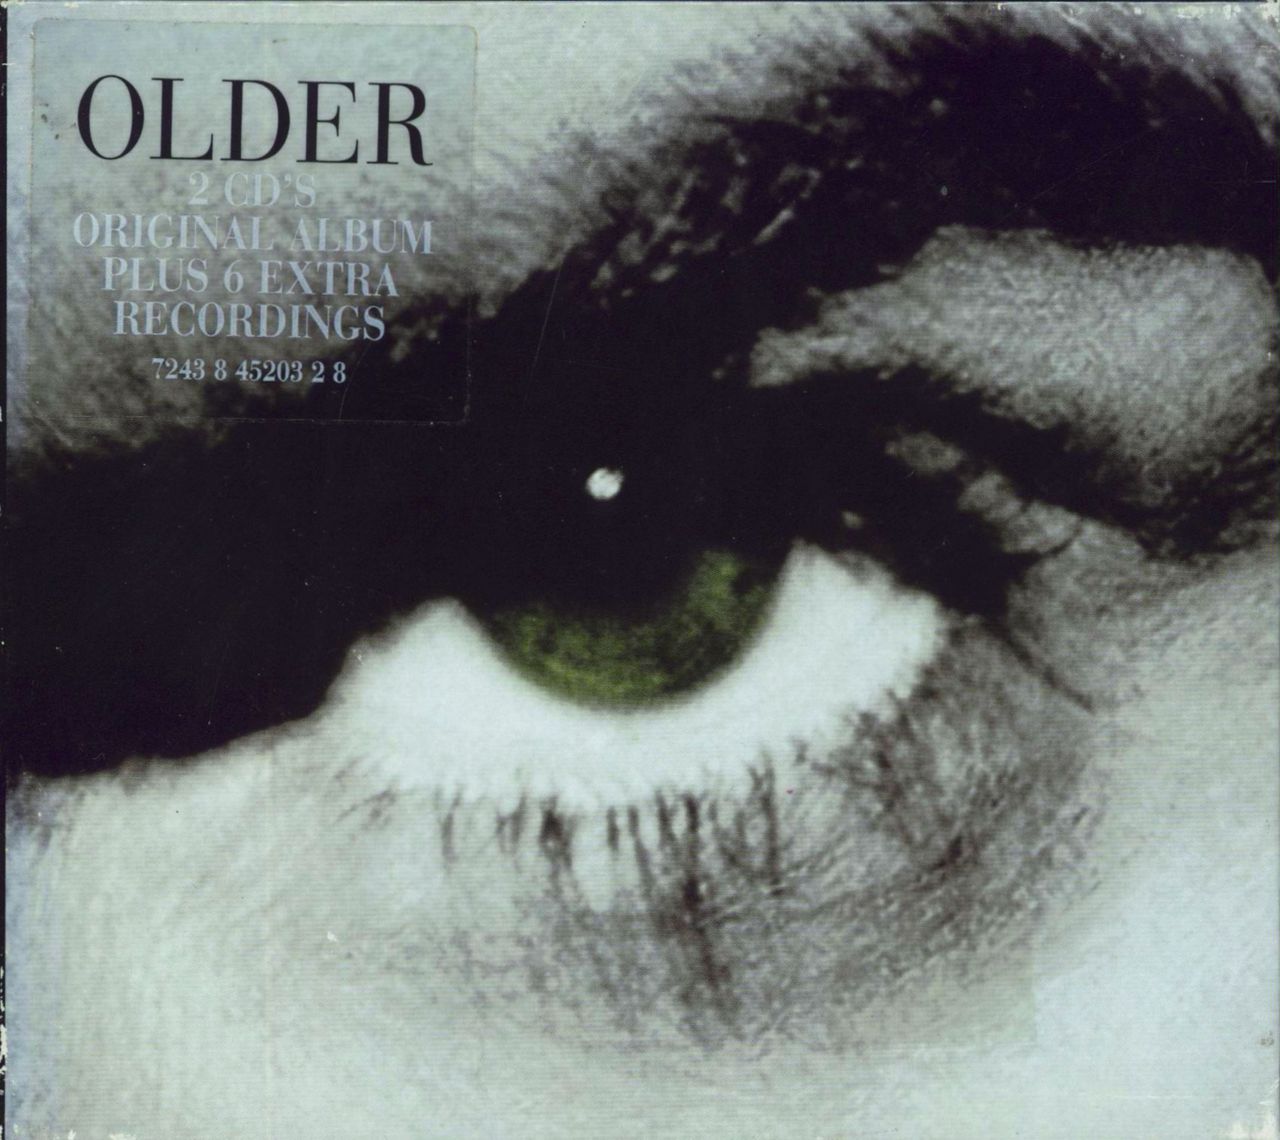 George Michael Older & Upper - EX UK 2-CD album set — RareVinyl.com